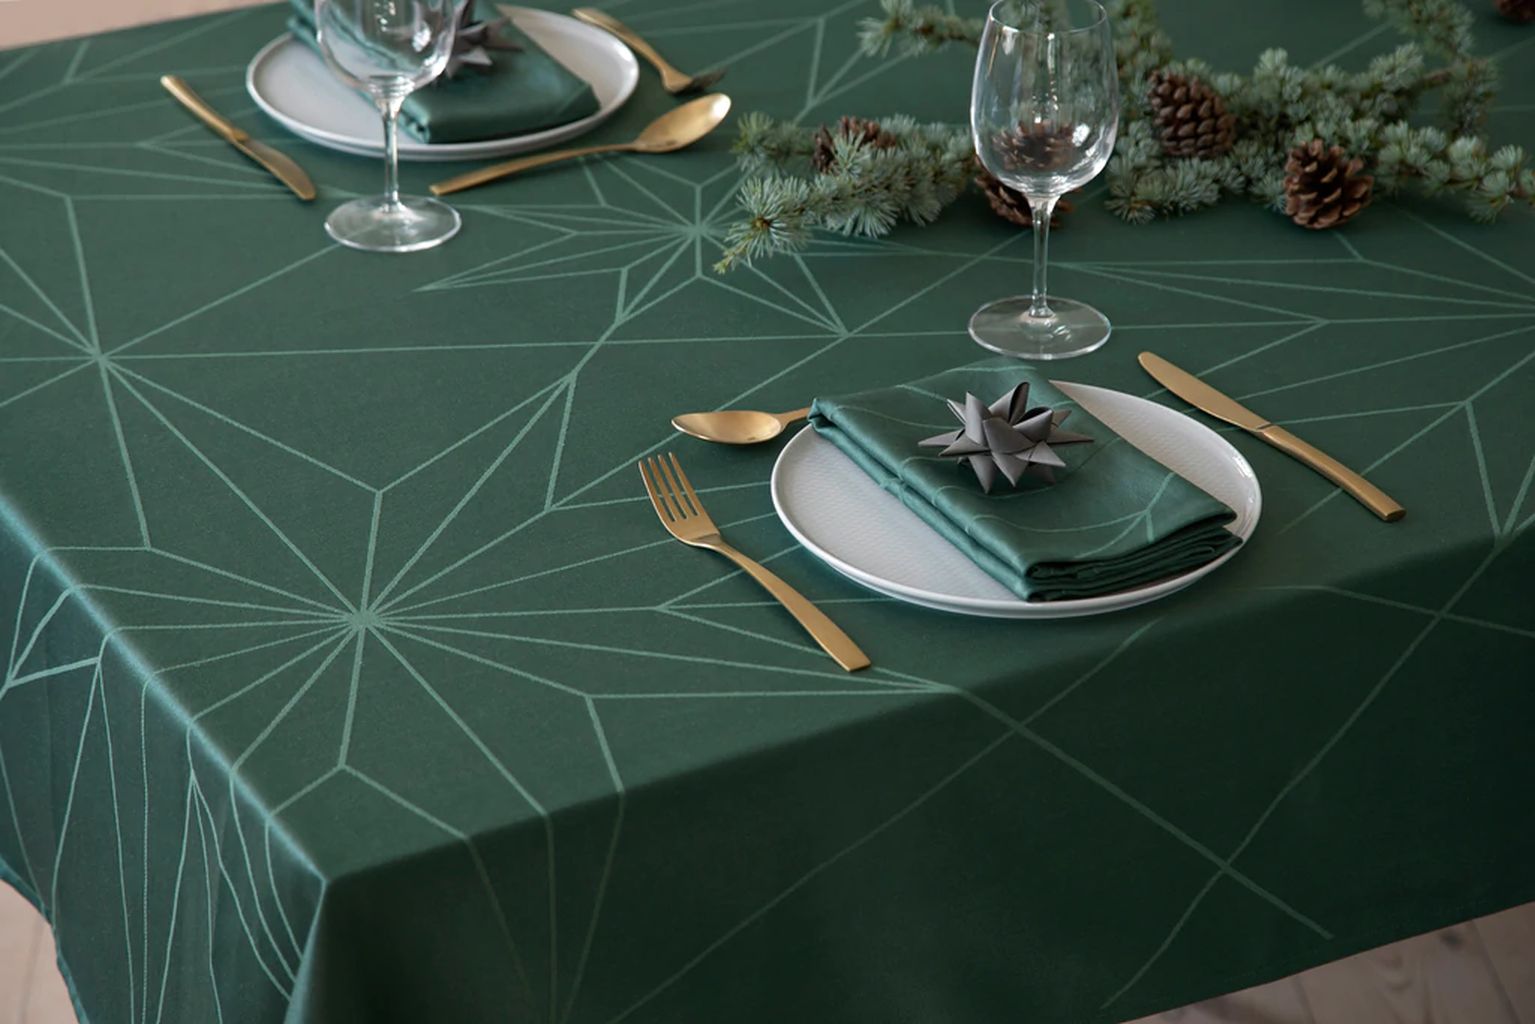 Novoform Design Sterne Tischtuch 270 Cm, Grün